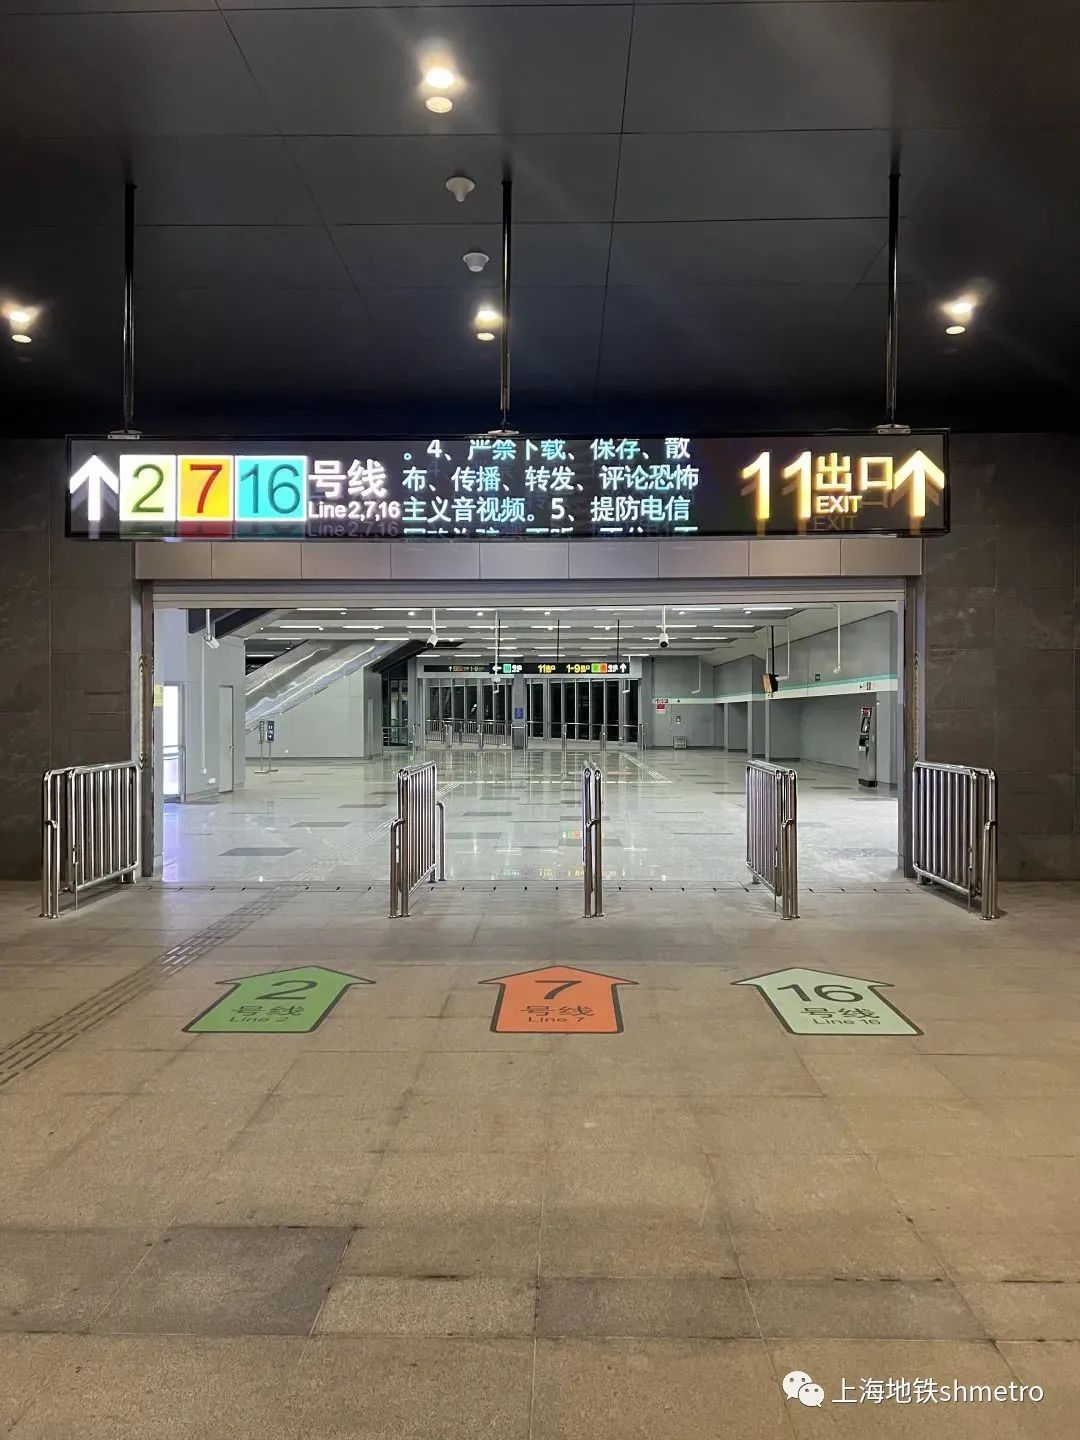 原16号线龙阳路站换乘2,7号线的中部换乘通道关闭,随之启用新东部换乘